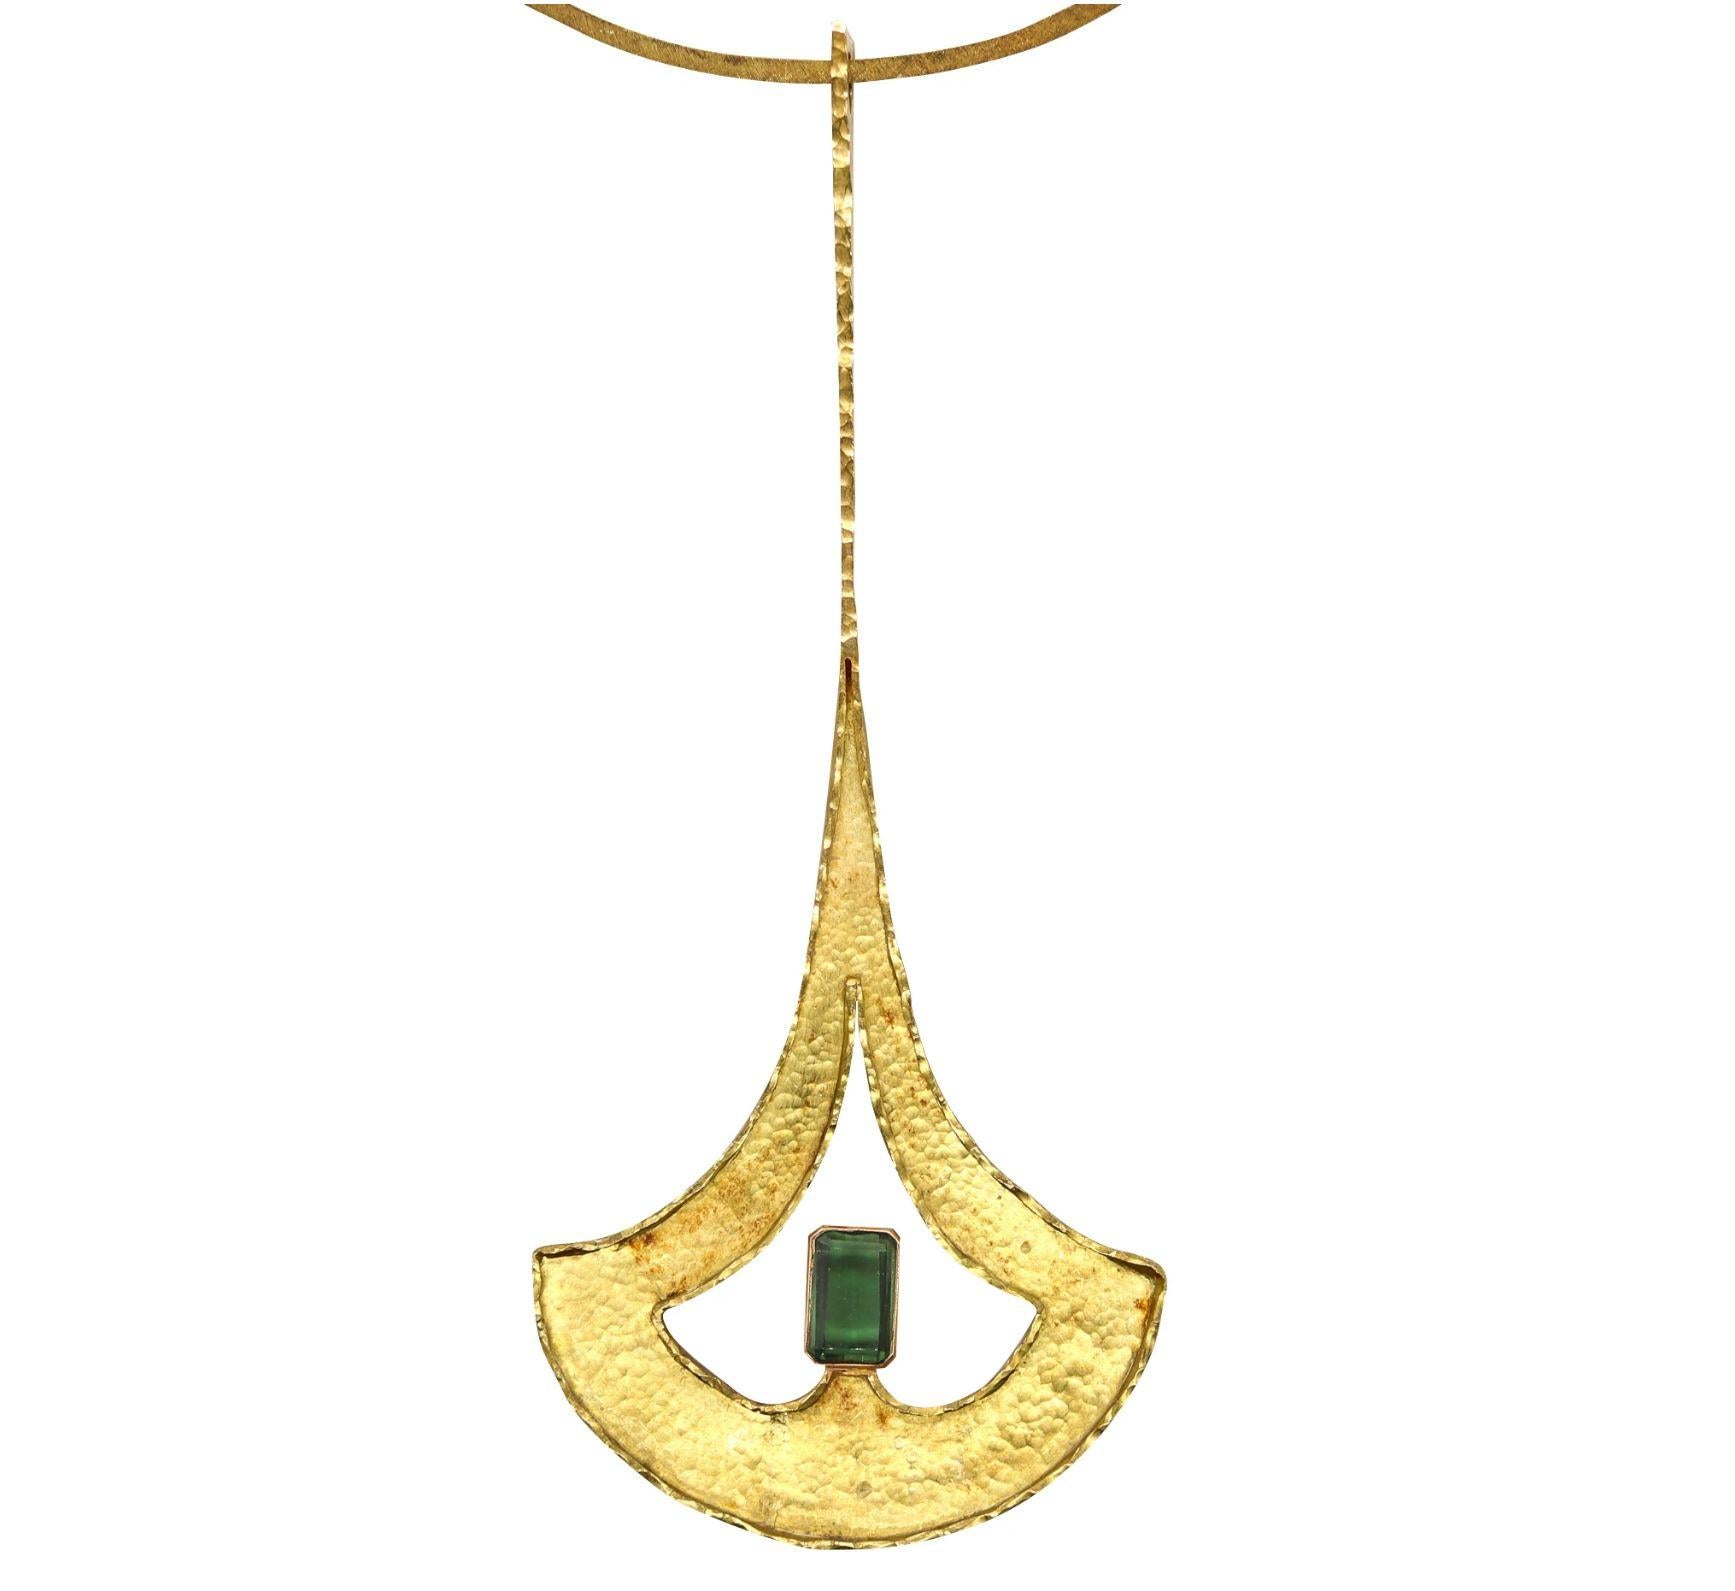 Guayasamin Modernist Geometric Sculptural Necklace 18Kt Gold & Green Tourmaline 4